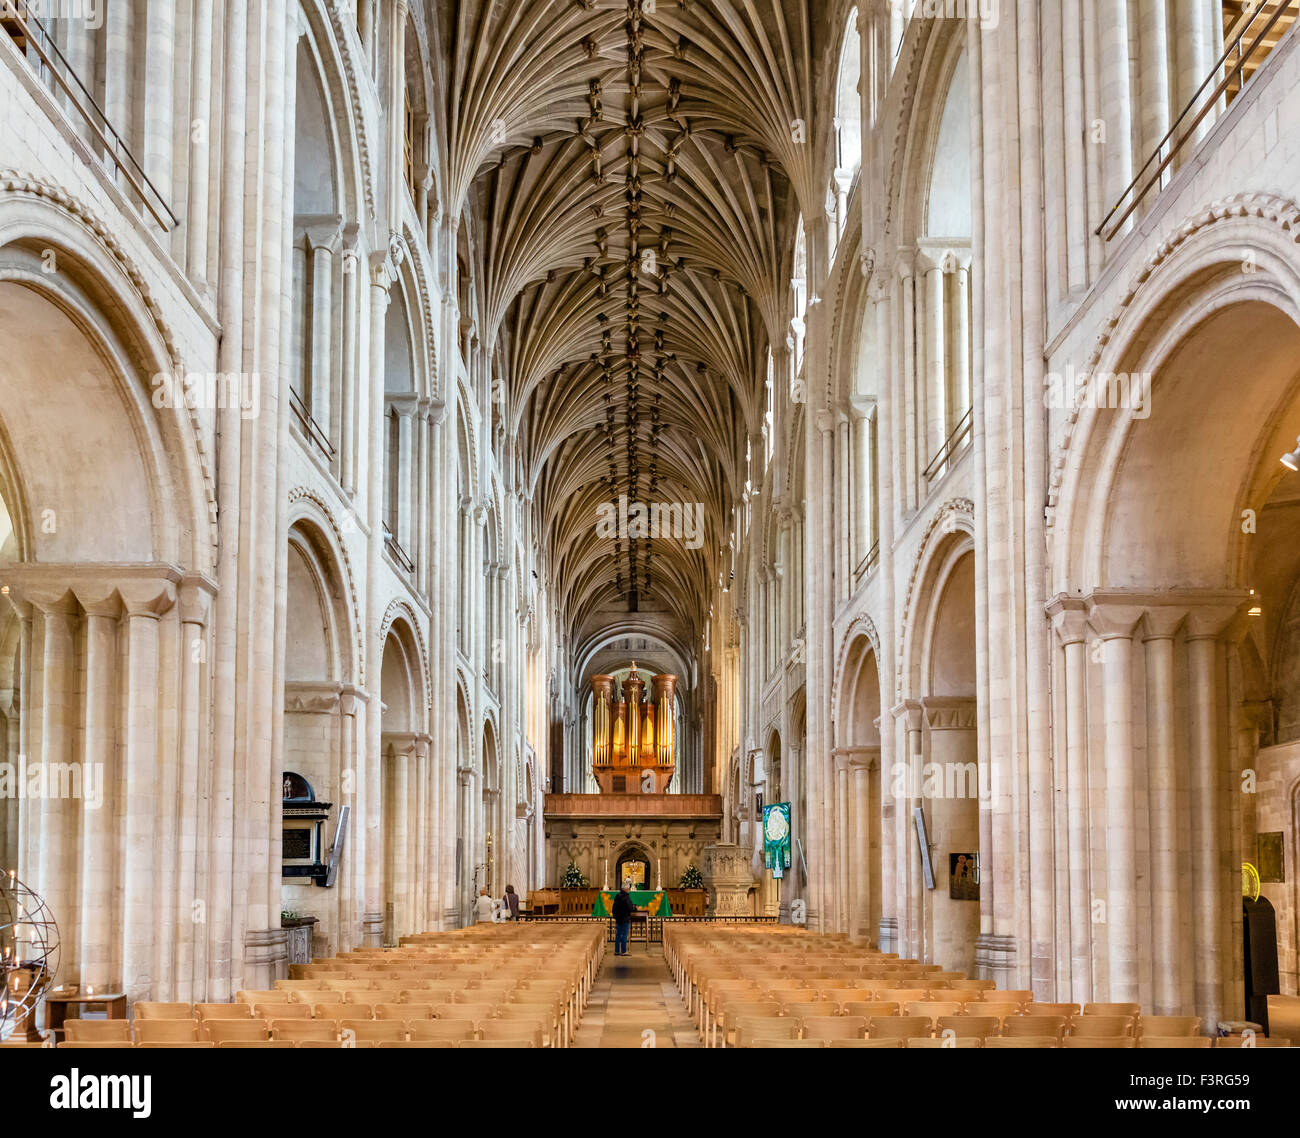 La nef de cathédrale de Norwich, Norwich, Norfolk, England, UK Banque D'Images